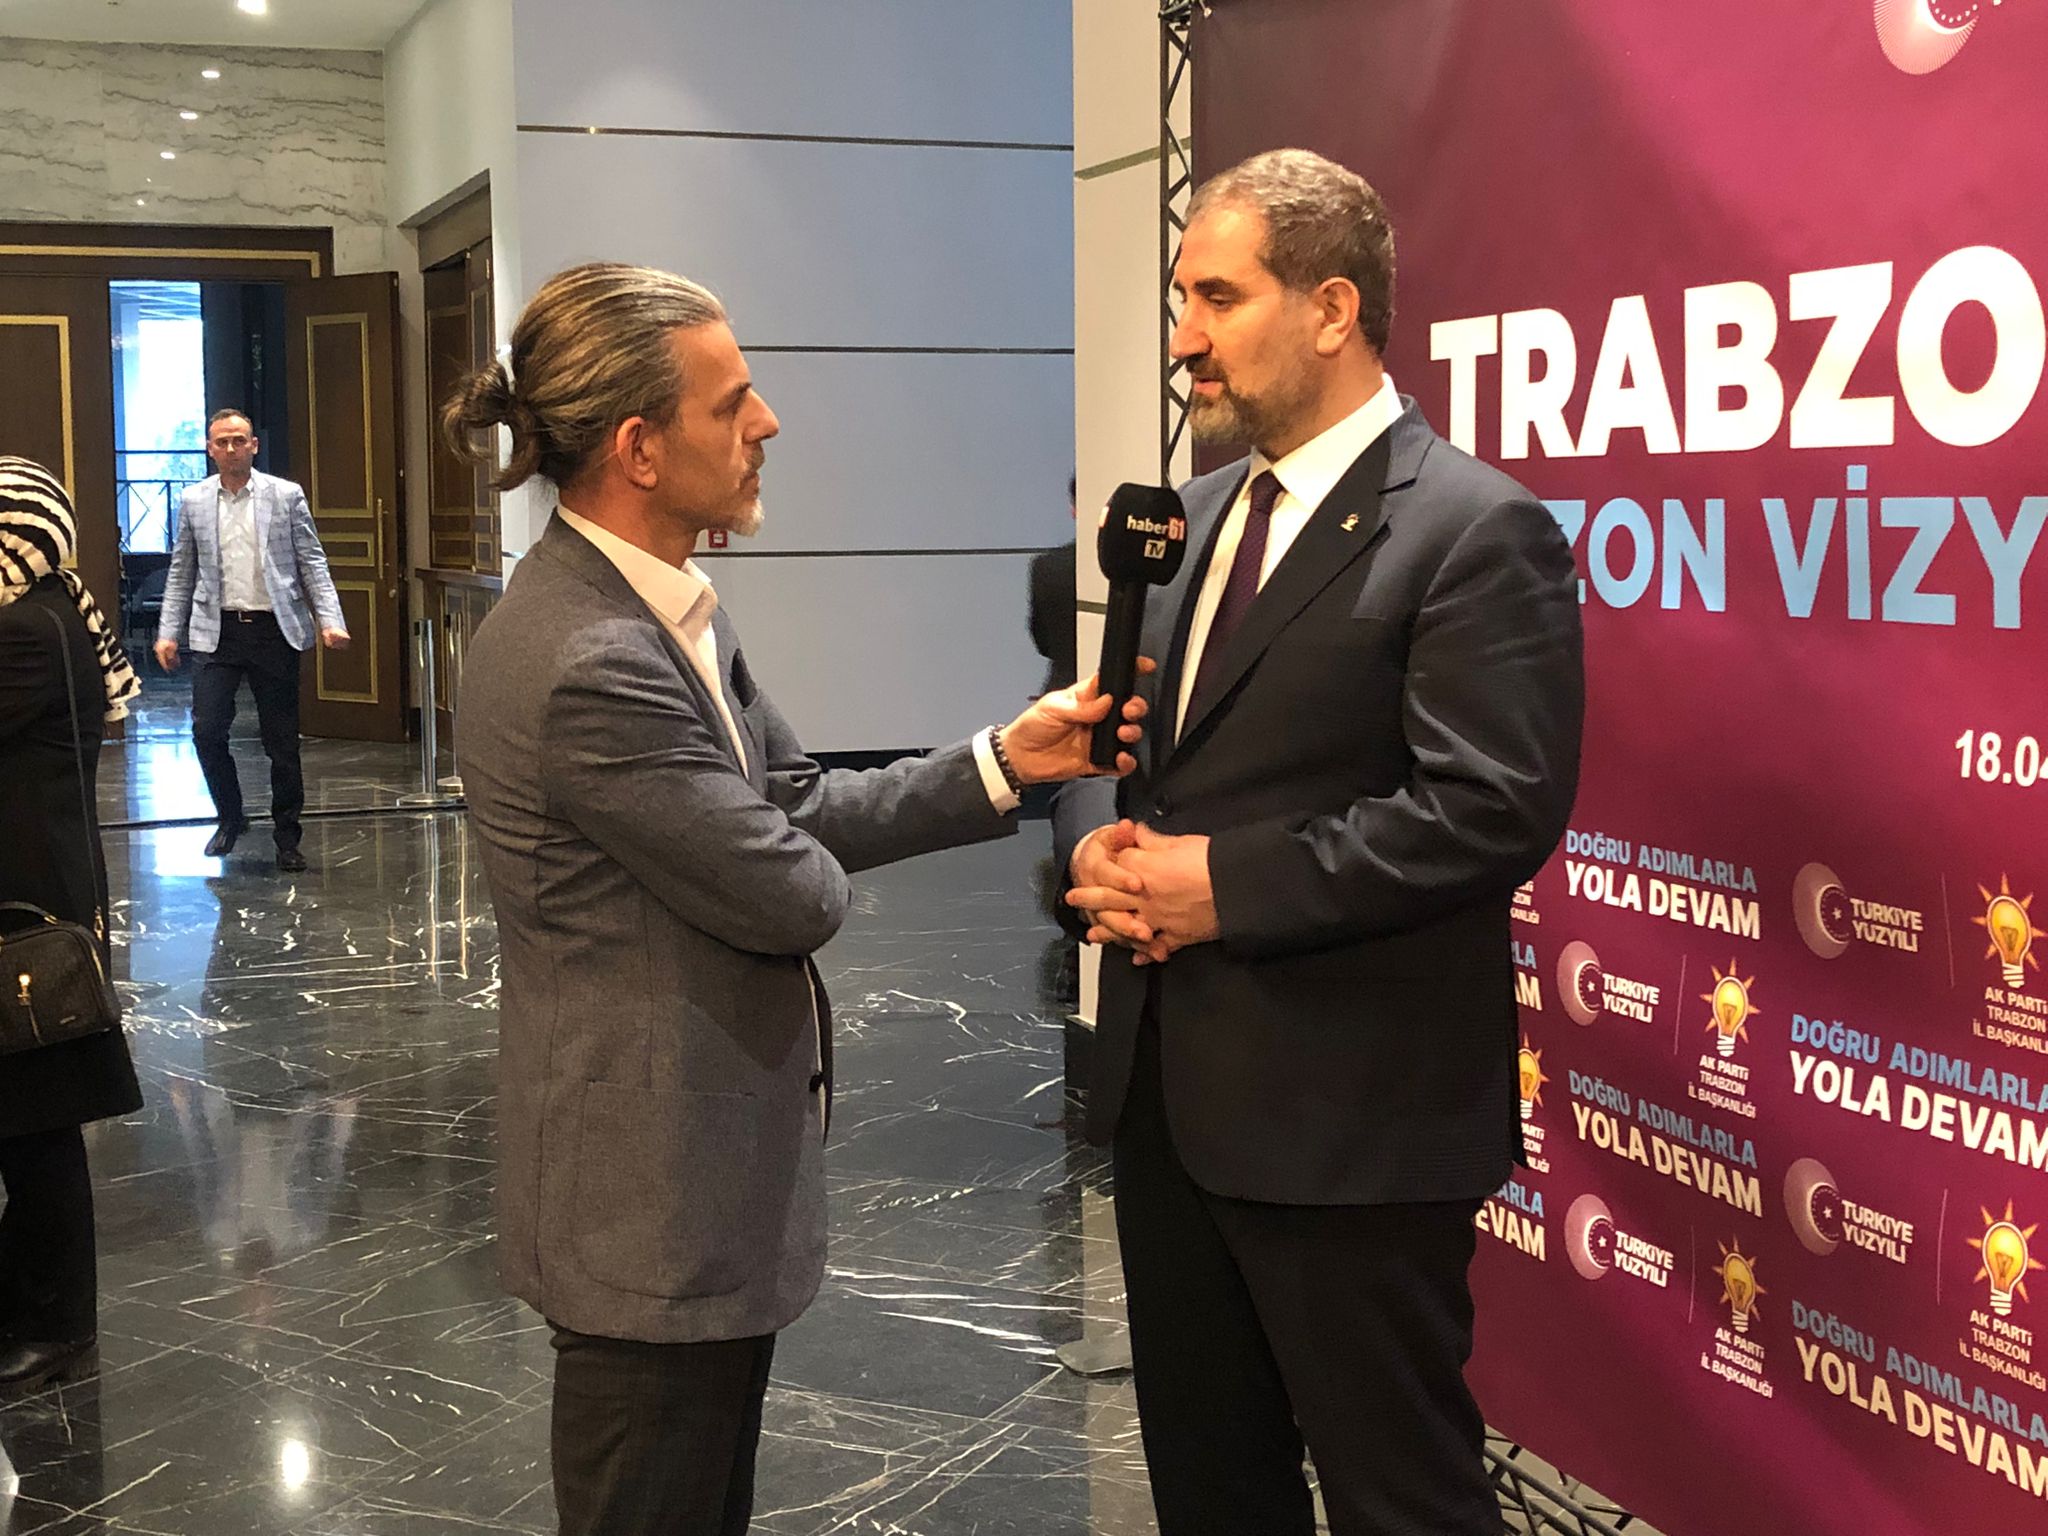 Trabzon 2028 Vizyon toplantısını böyle değerlendirdiler; “Trabzon’u Ayağa kaldıracağız”